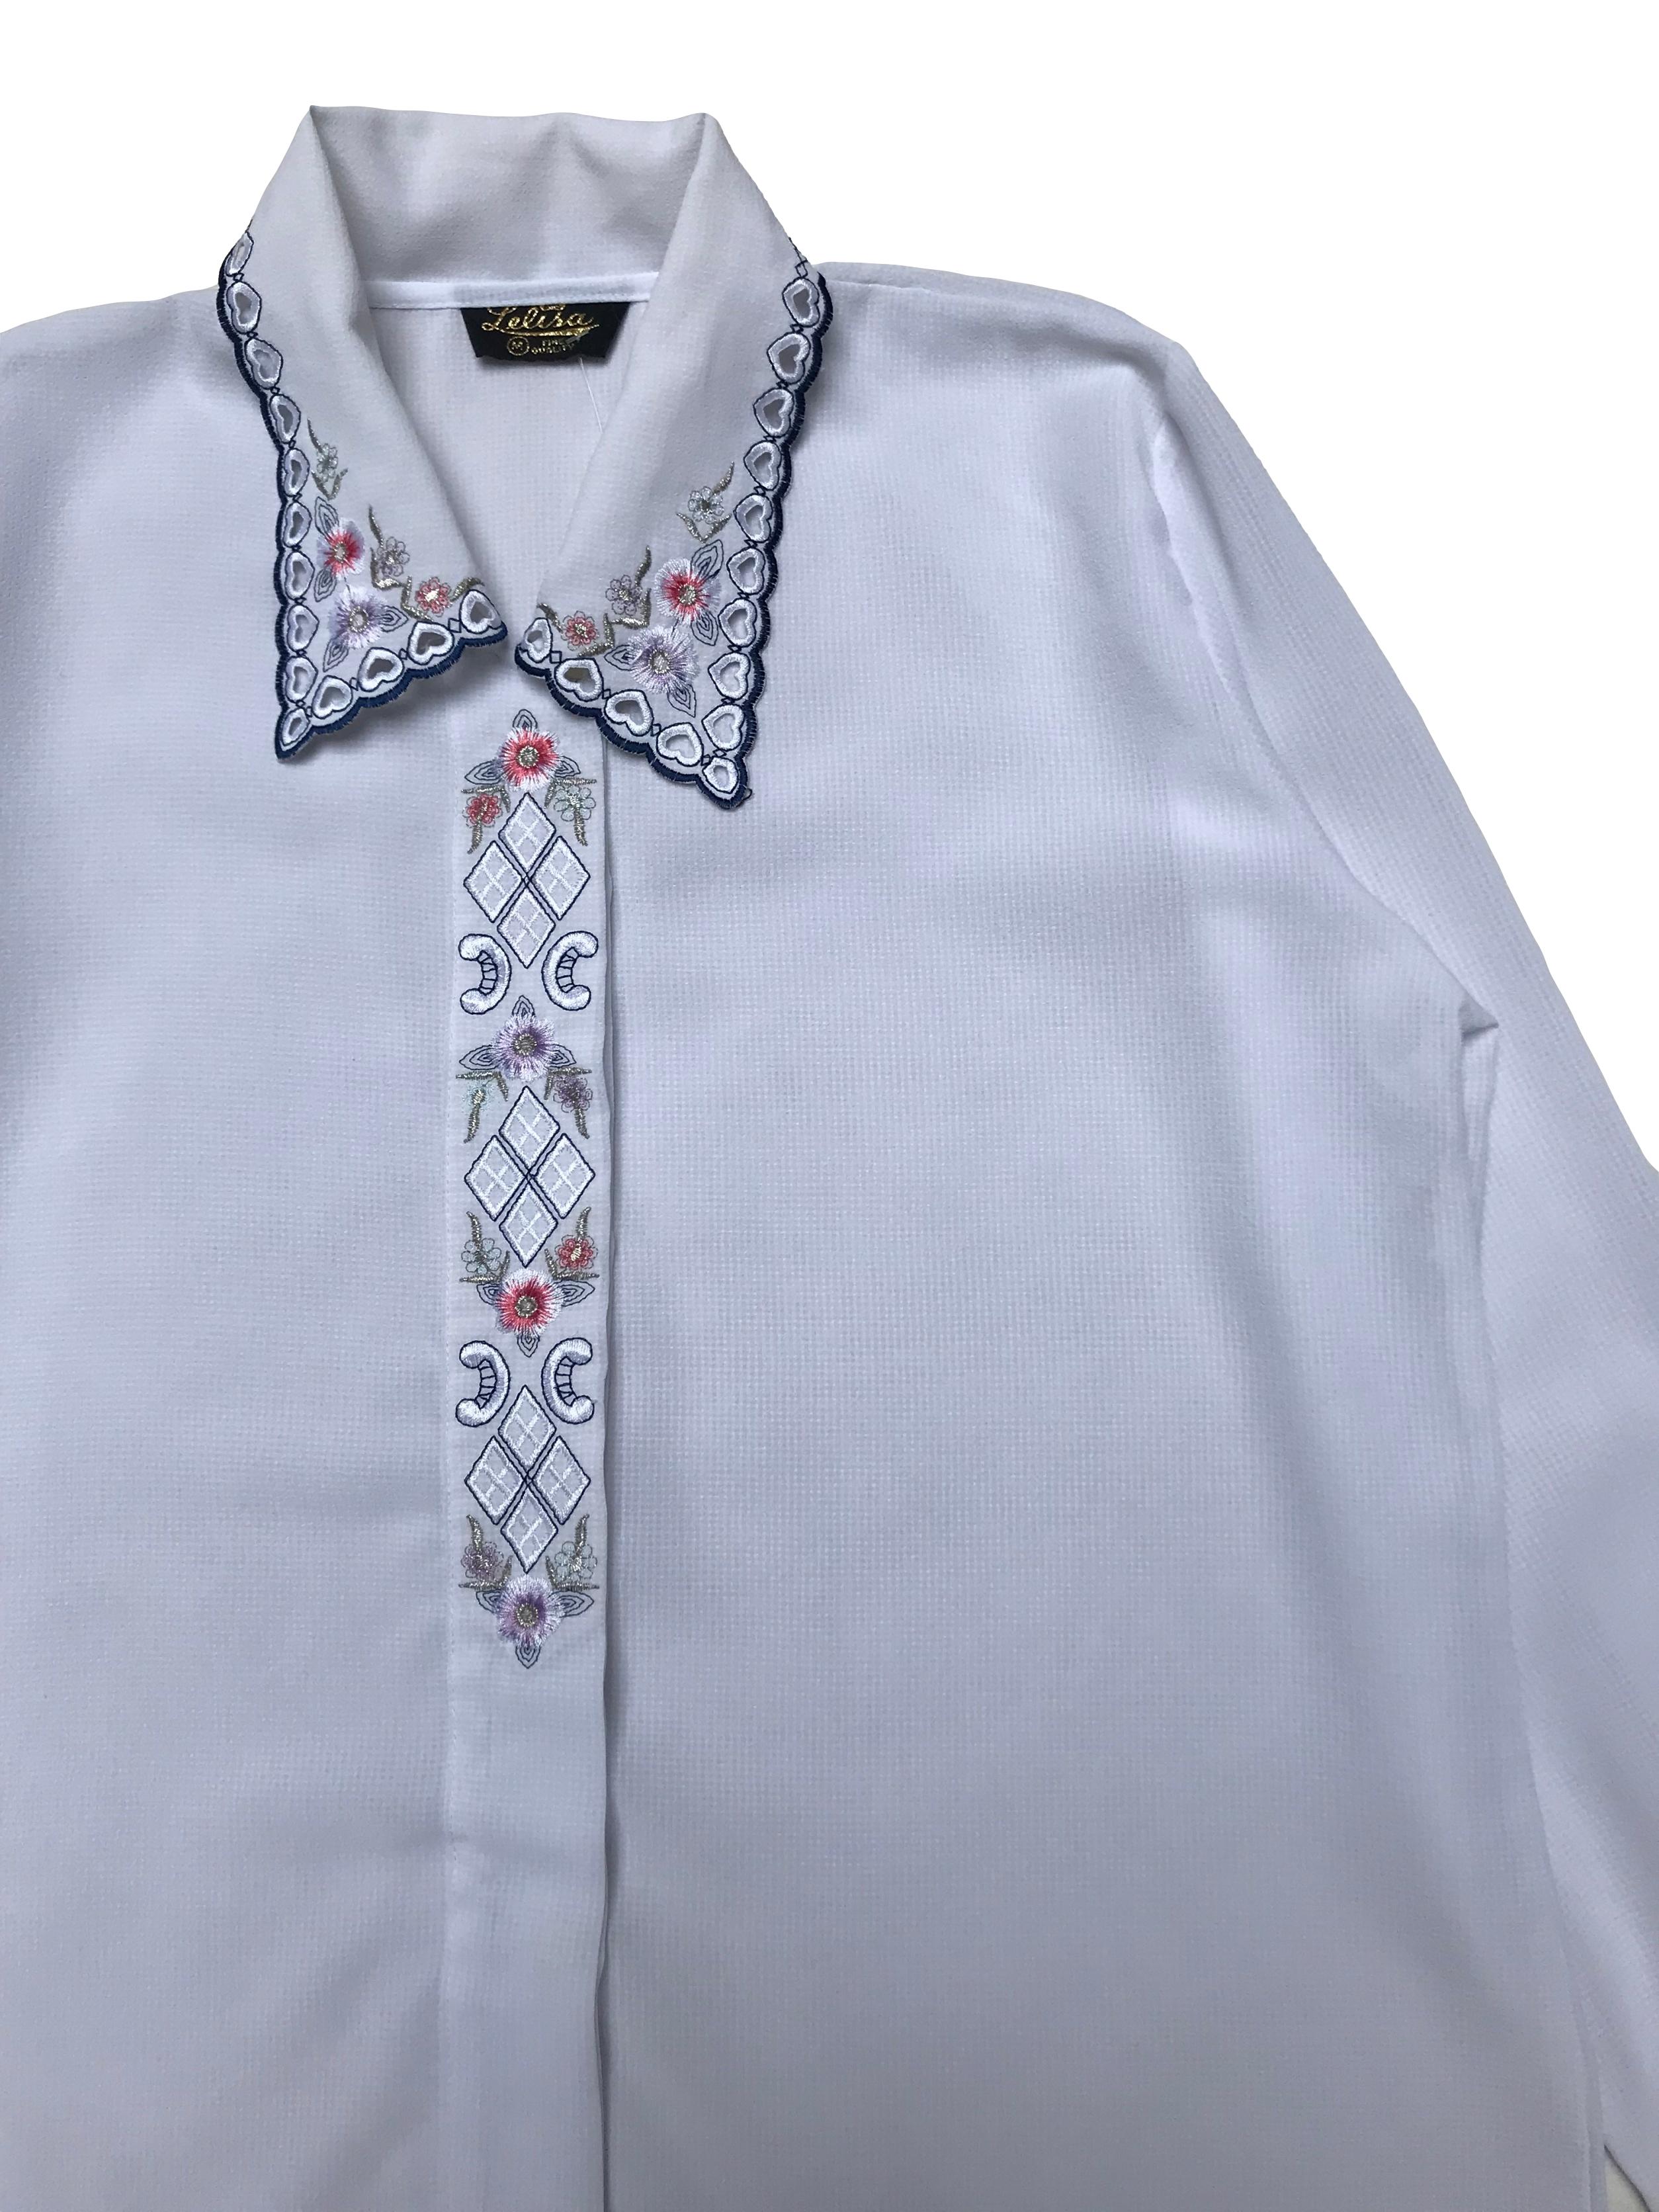 Blusa vintage de crepé blanco con detalles bordados y calados en cuello y tapa de botones. Ancho 110cm Largo 62cm